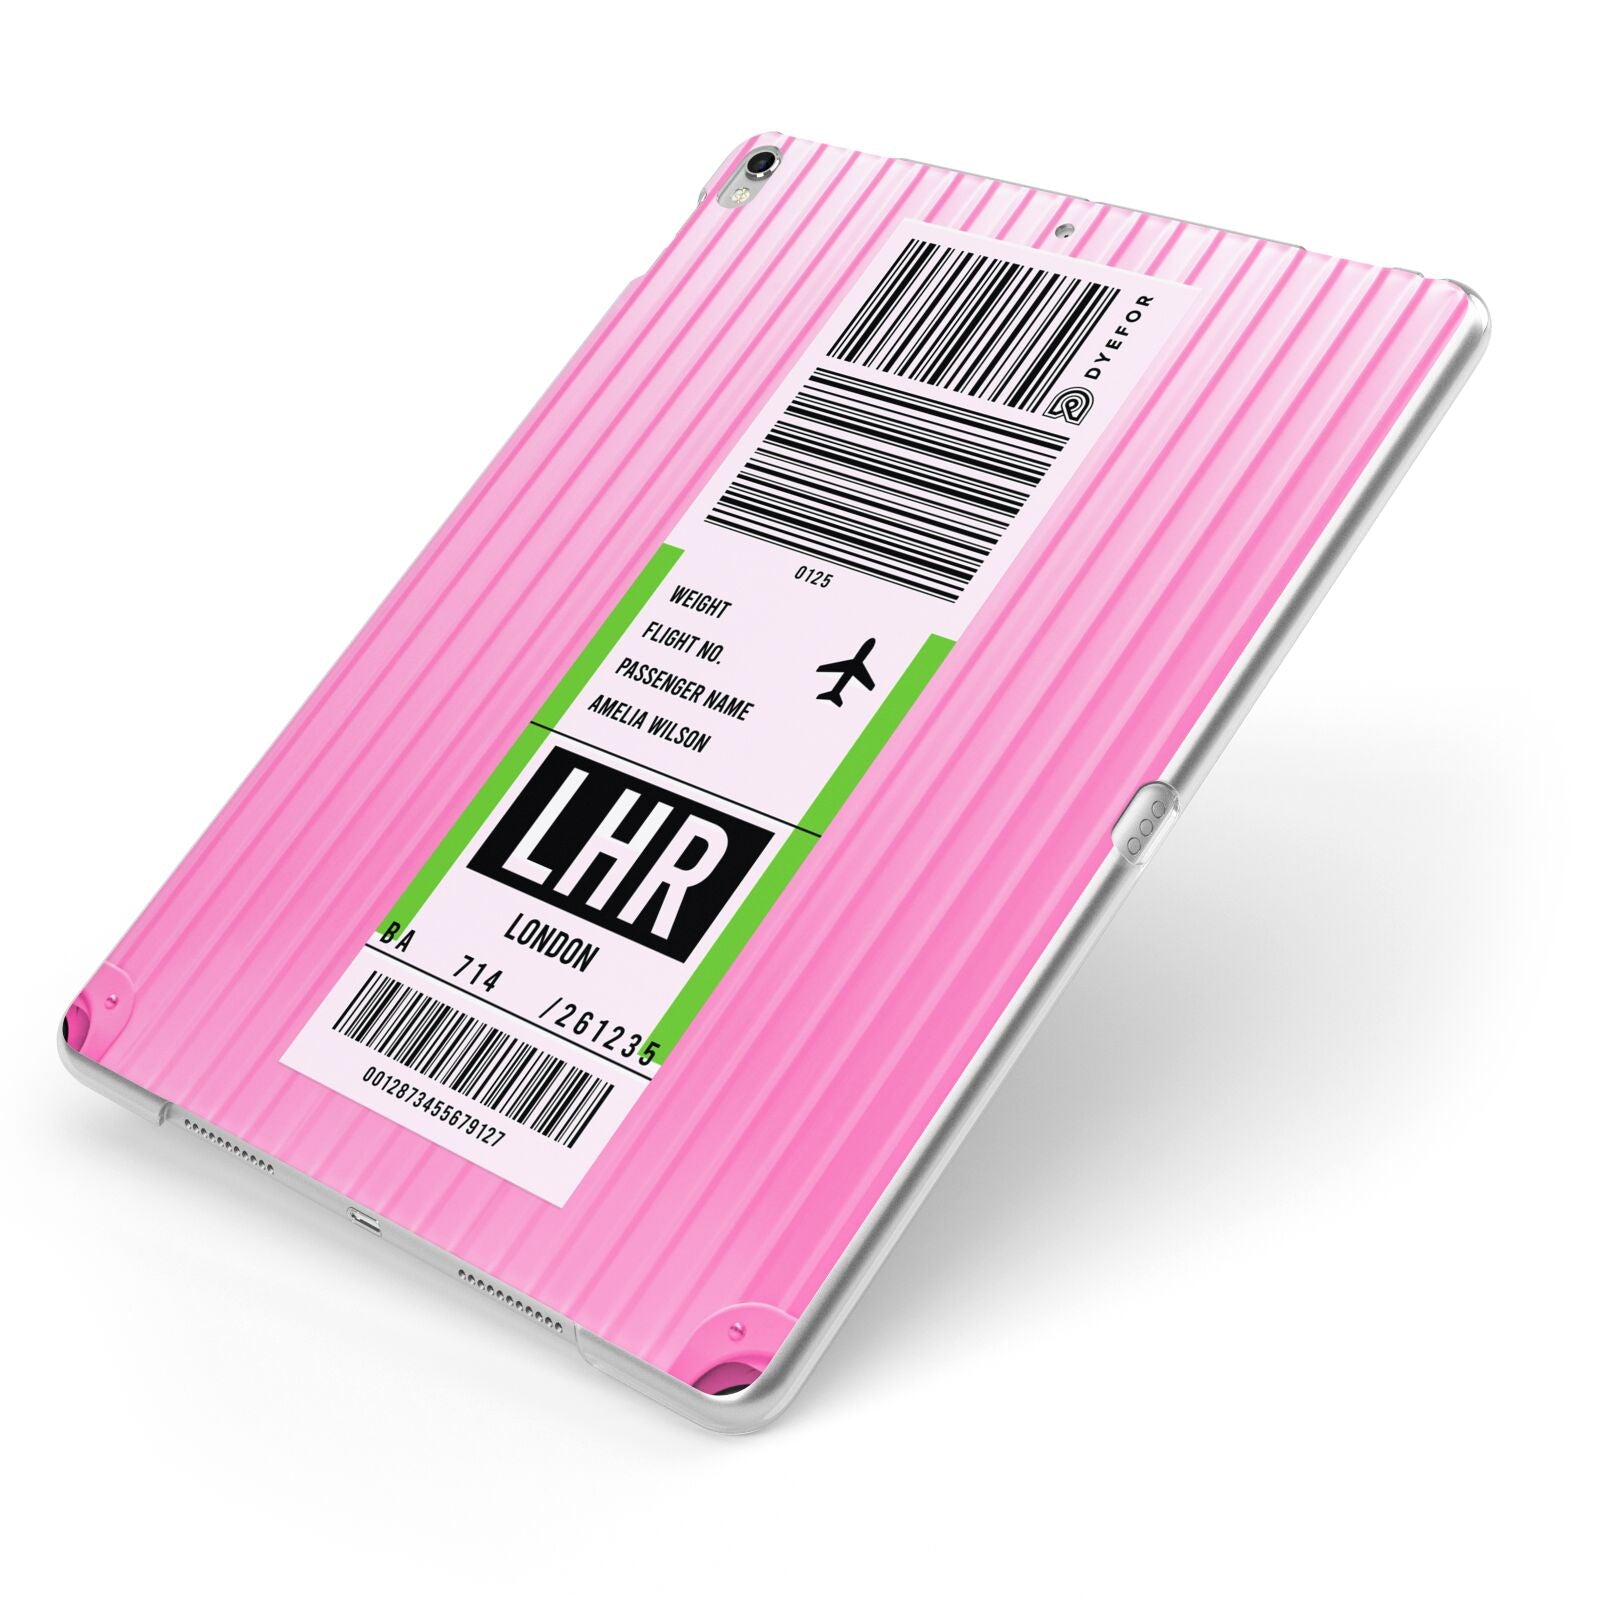 Customised Luggage Tag Apple iPad Case on Silver iPad Side View